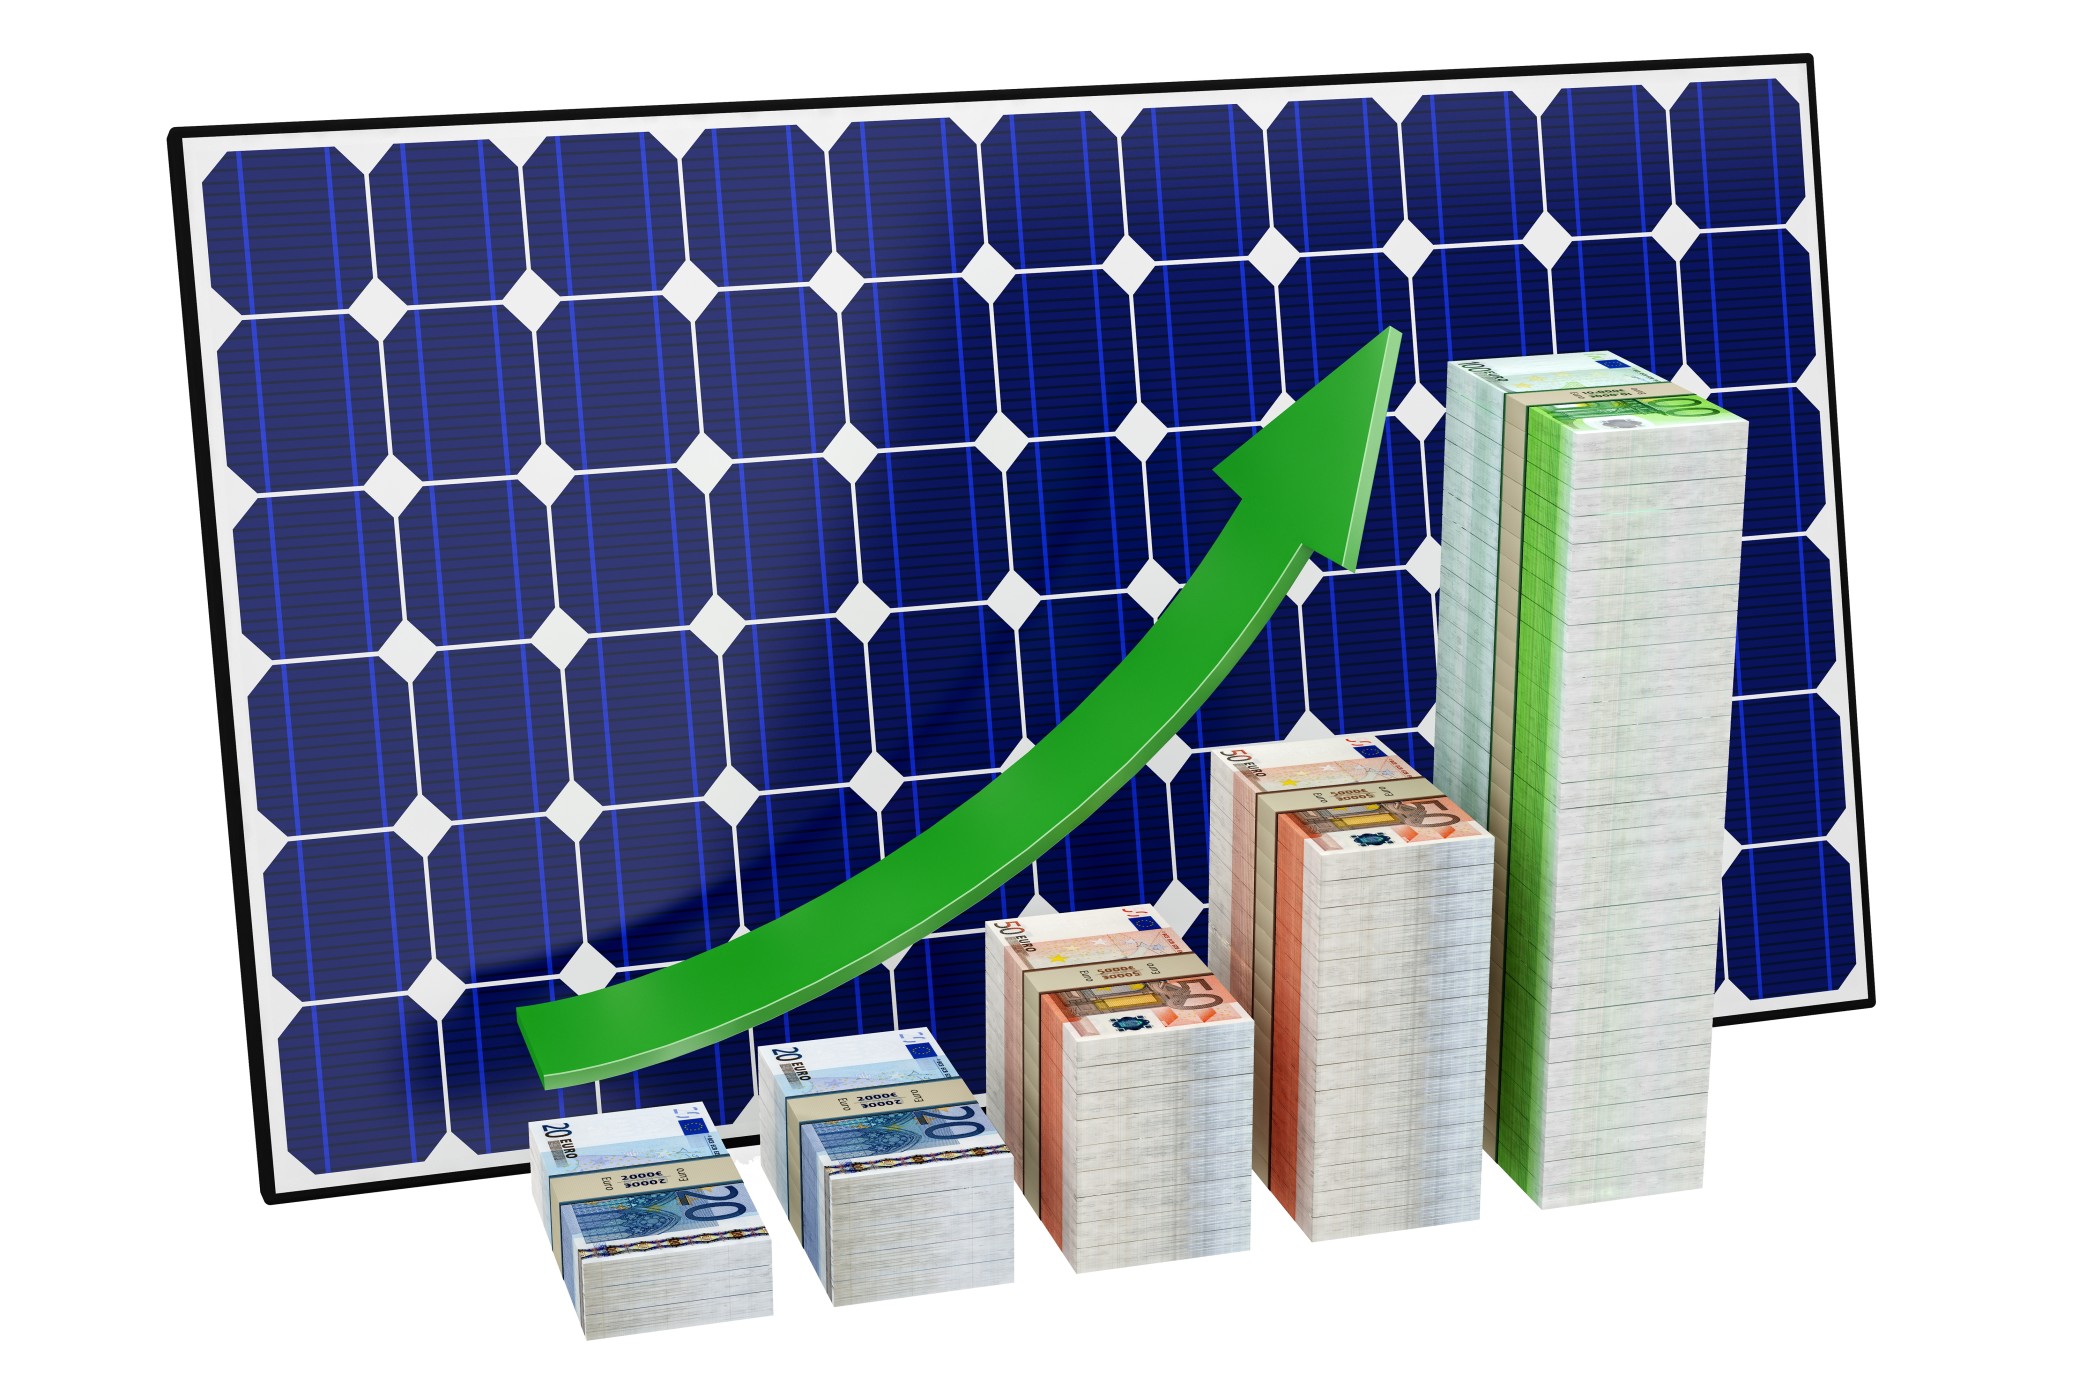 Investitionen in Energie & Solar Aktien - sinnvolle Investment Idee & Chance?! Bild: @Lightboxx via Twenty20